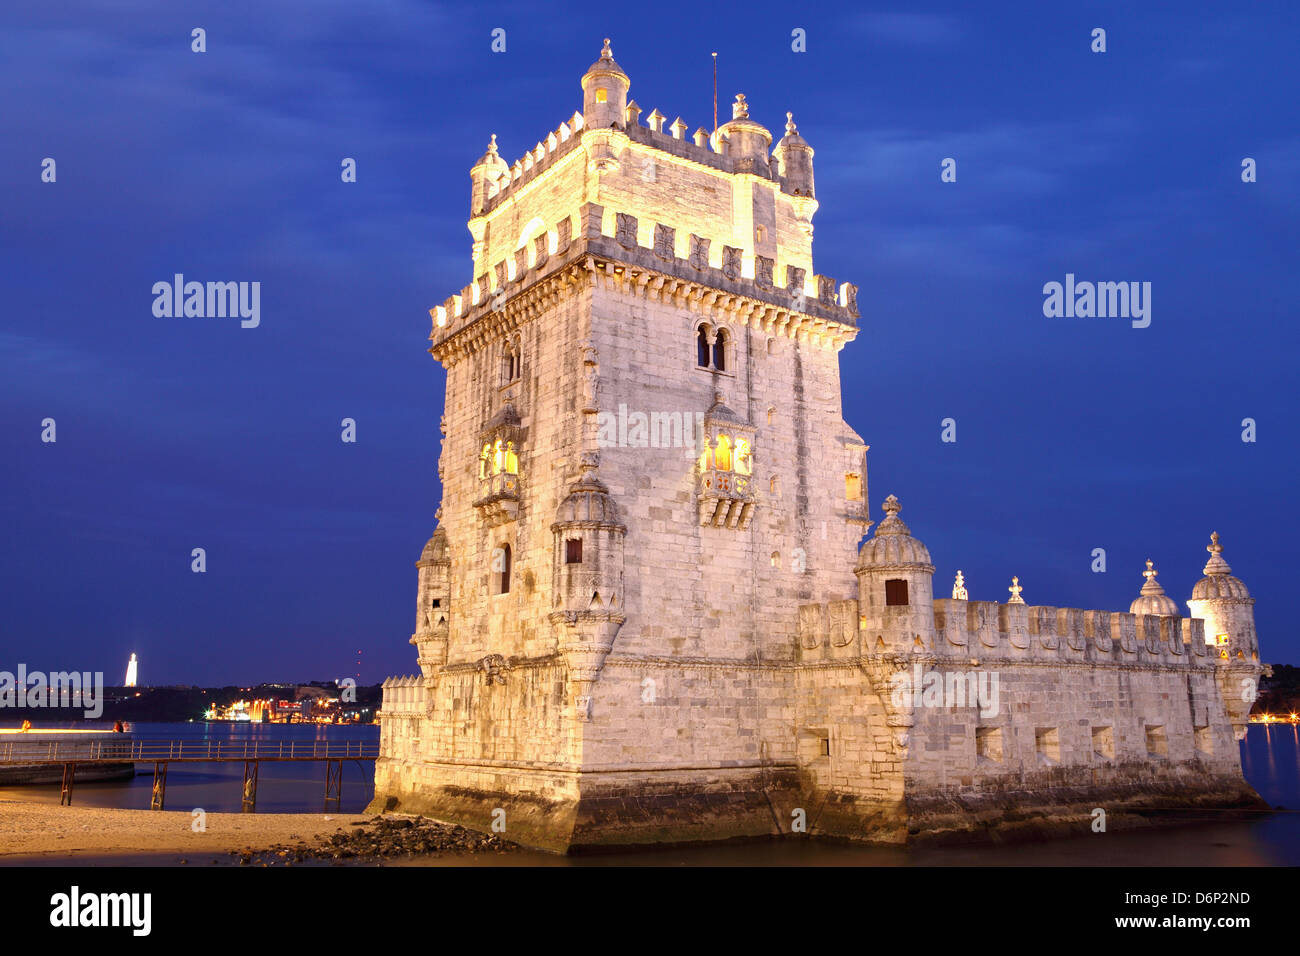 La Tour de Belem, forteresse manuéline, Site du patrimoine mondial de l'UNESCO, sur le Rio Tejo (Tage), Belém, Lisbonne, Portugal Banque D'Images